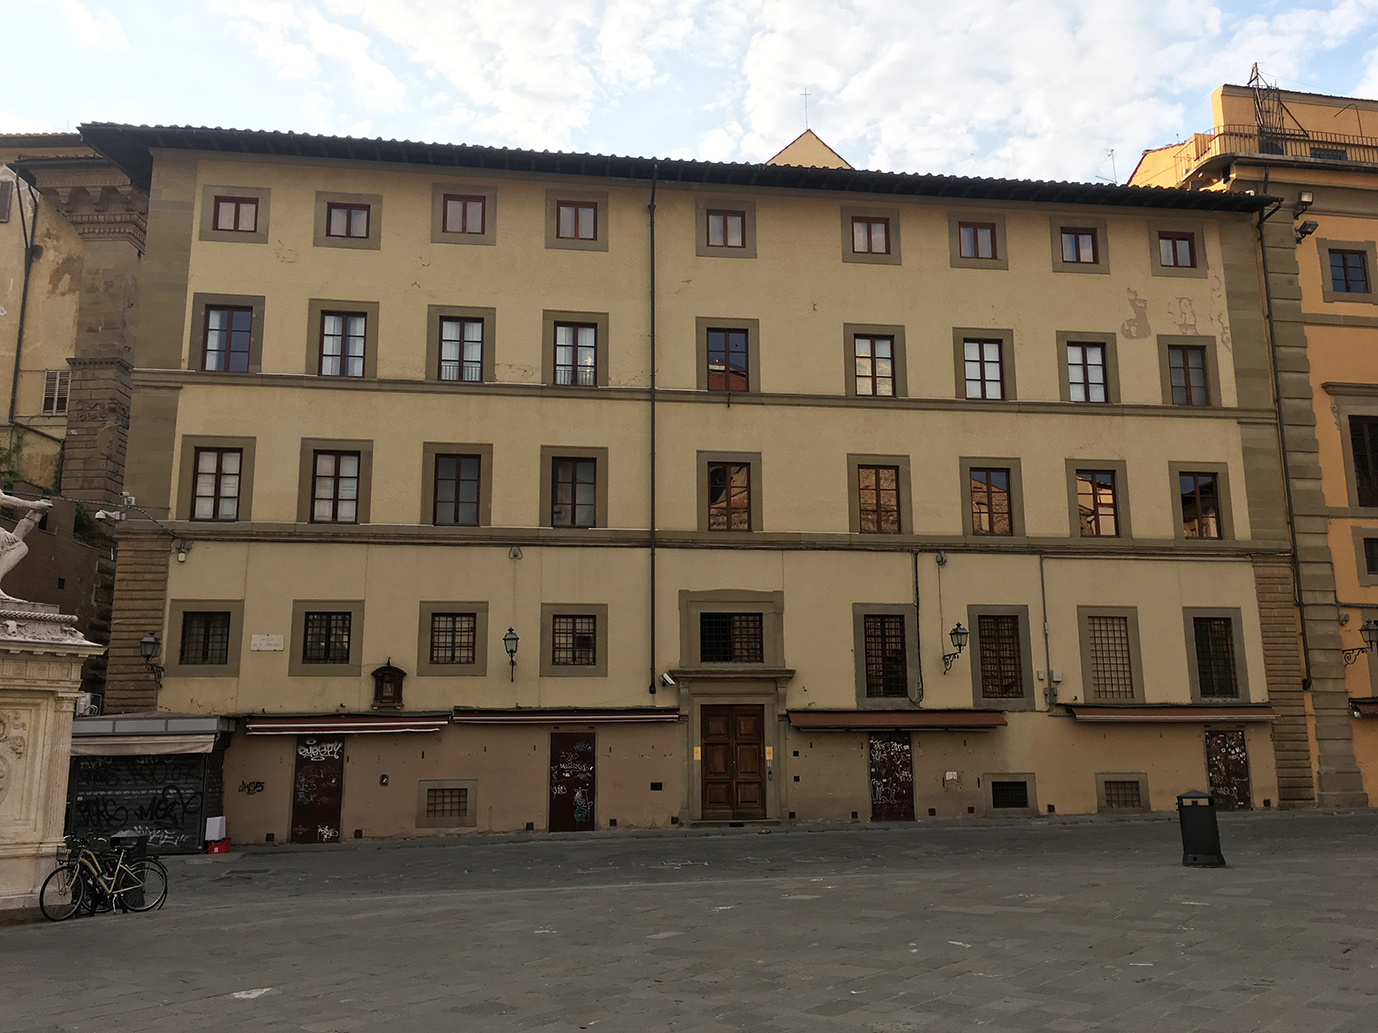 Convento di San Giovannino (ex) (convento) - Firenze (FI) 